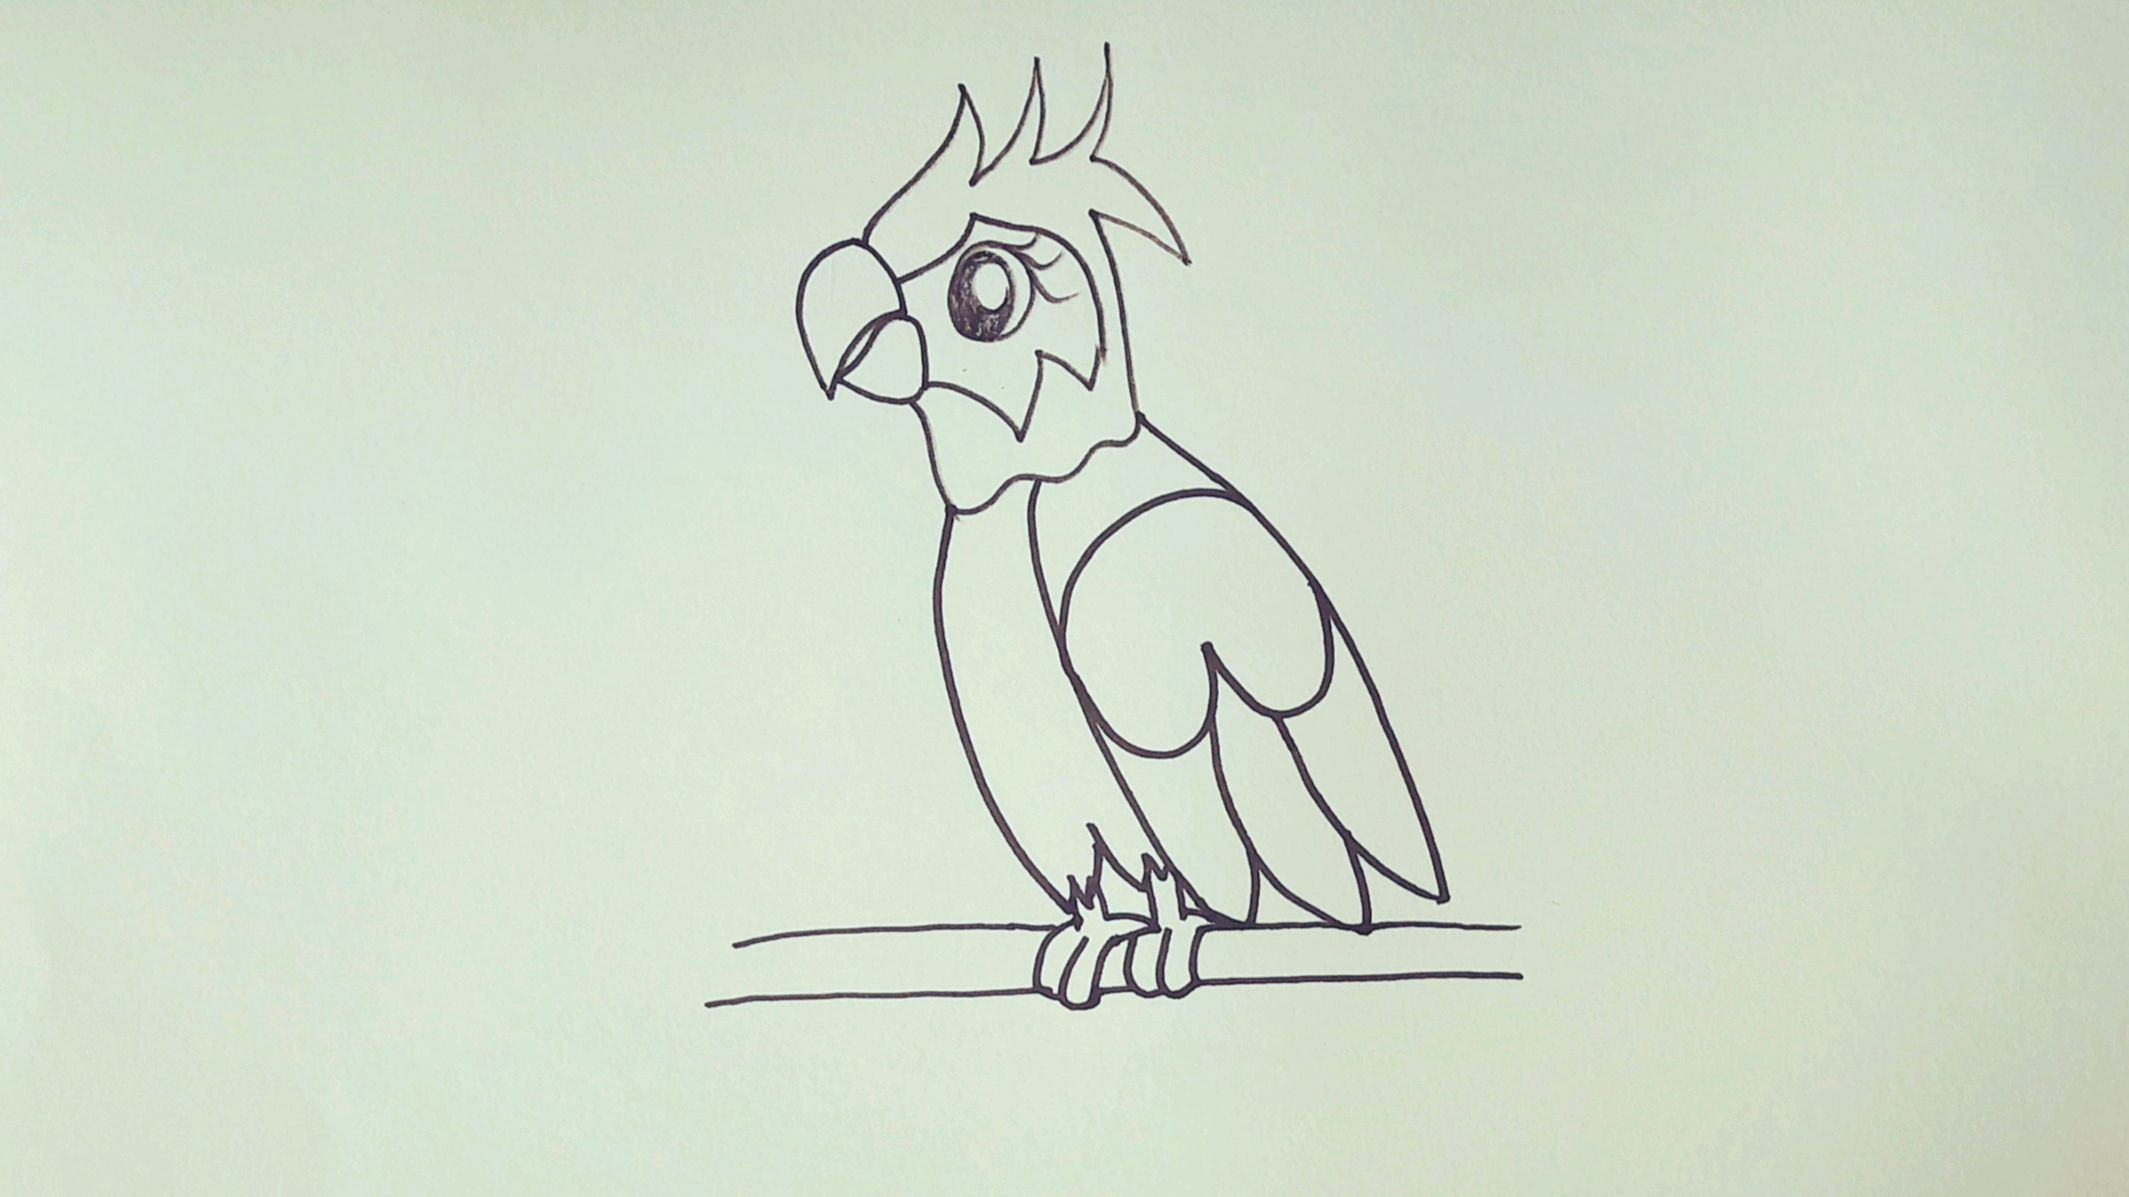 1鹦鹉:先画出鹦鹉的大概轮廓,画出五官和羽毛,然后进行勾边,最后涂上